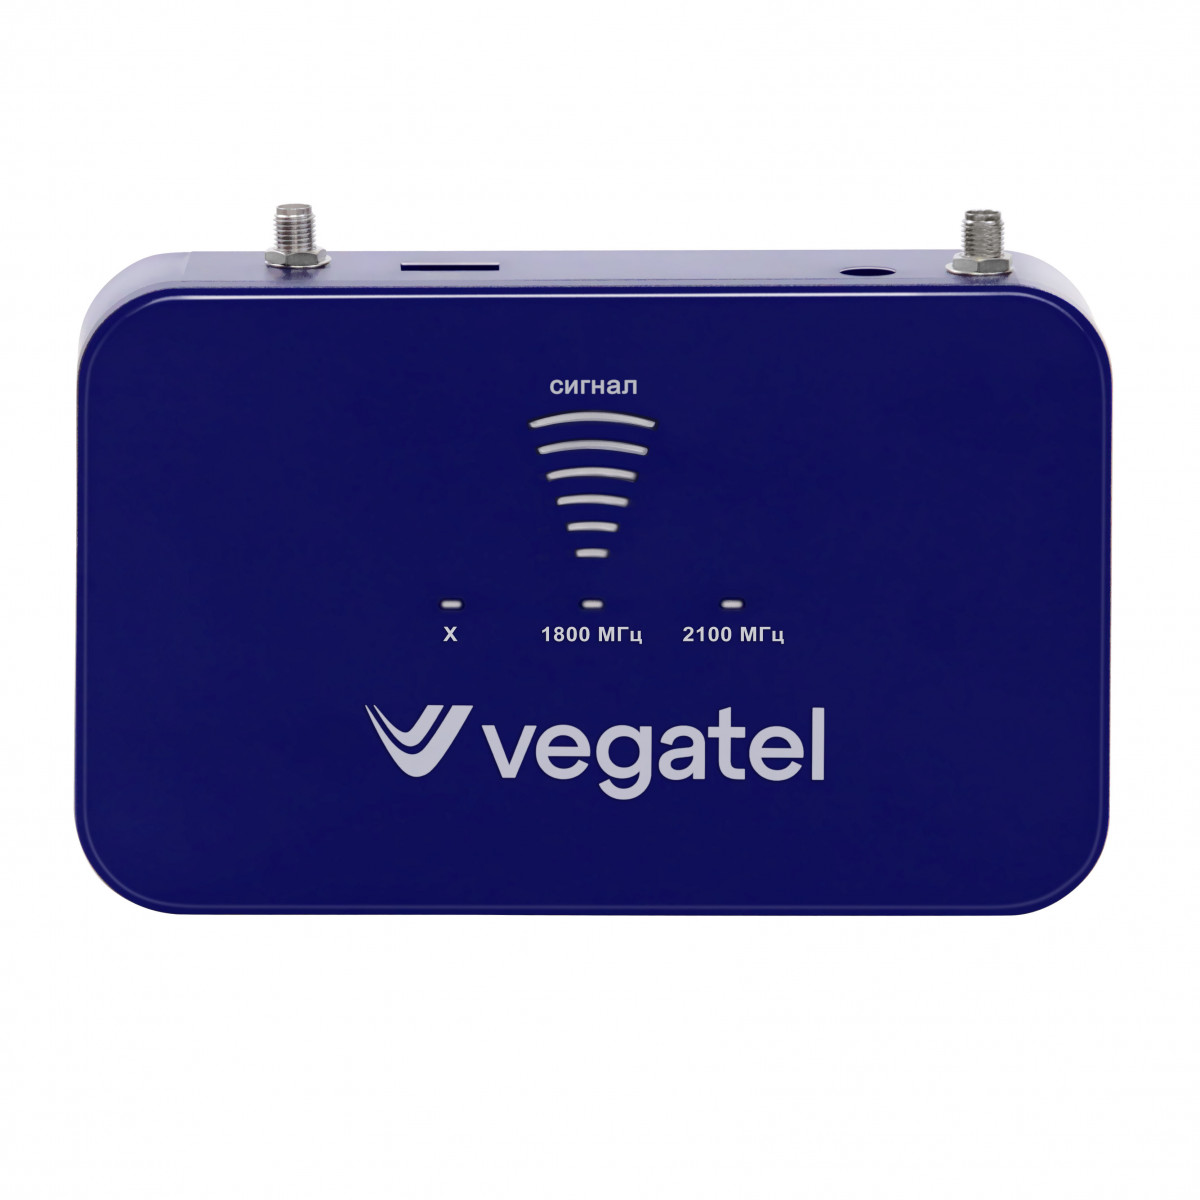 Детальное изображение товара "Комплект усиления сотовой связи Vegatel PL-1800/2100" из каталога оборудования Антенна76